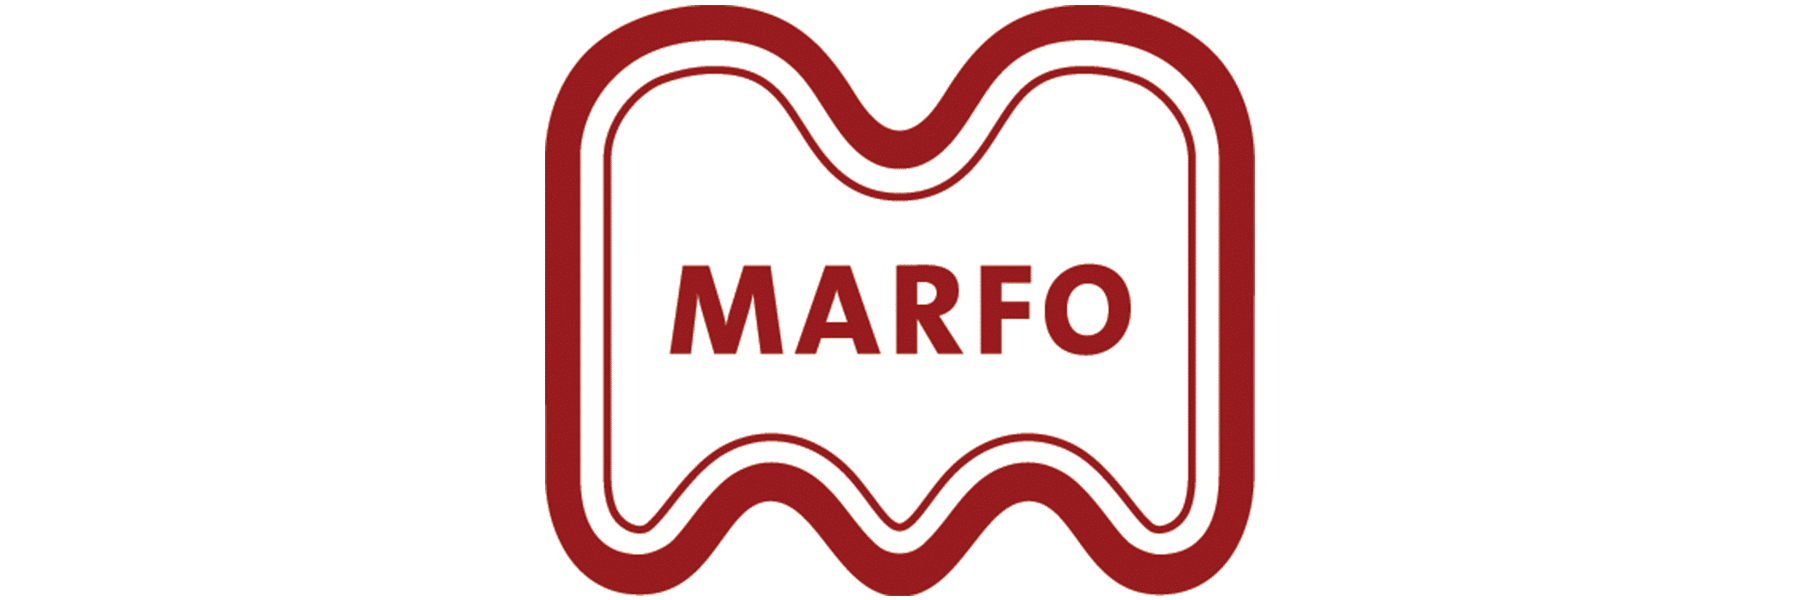 Marfo bv / Chef Martin